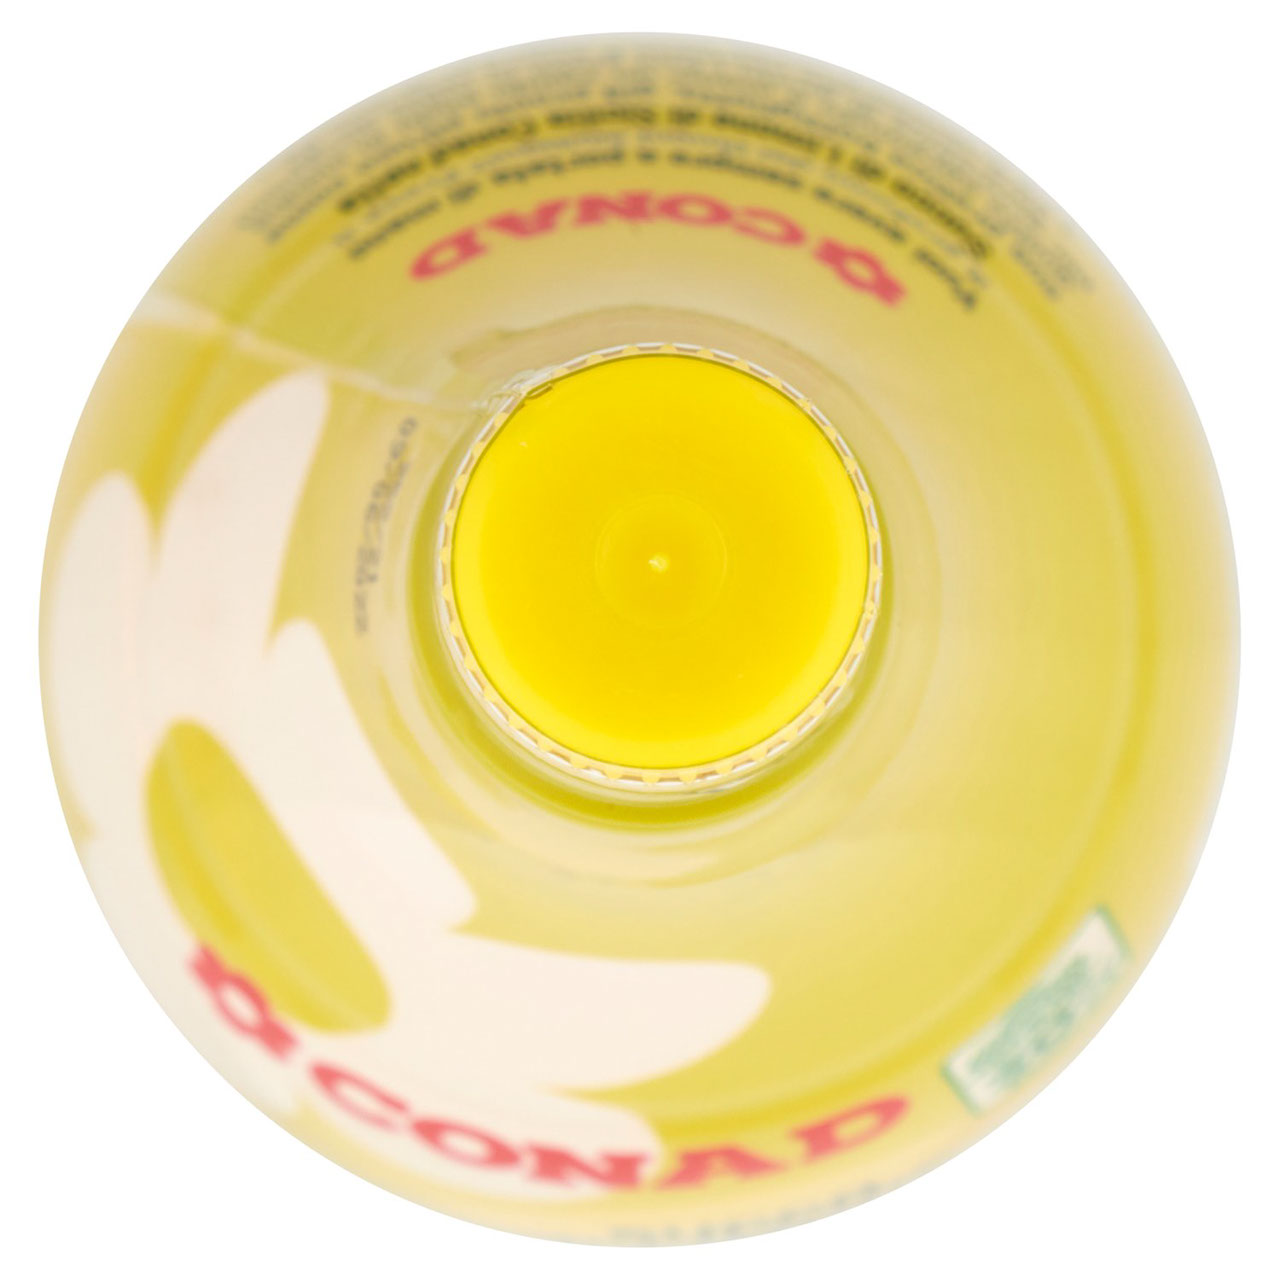 Succo di Limone di Sicilia 200 ml Conad